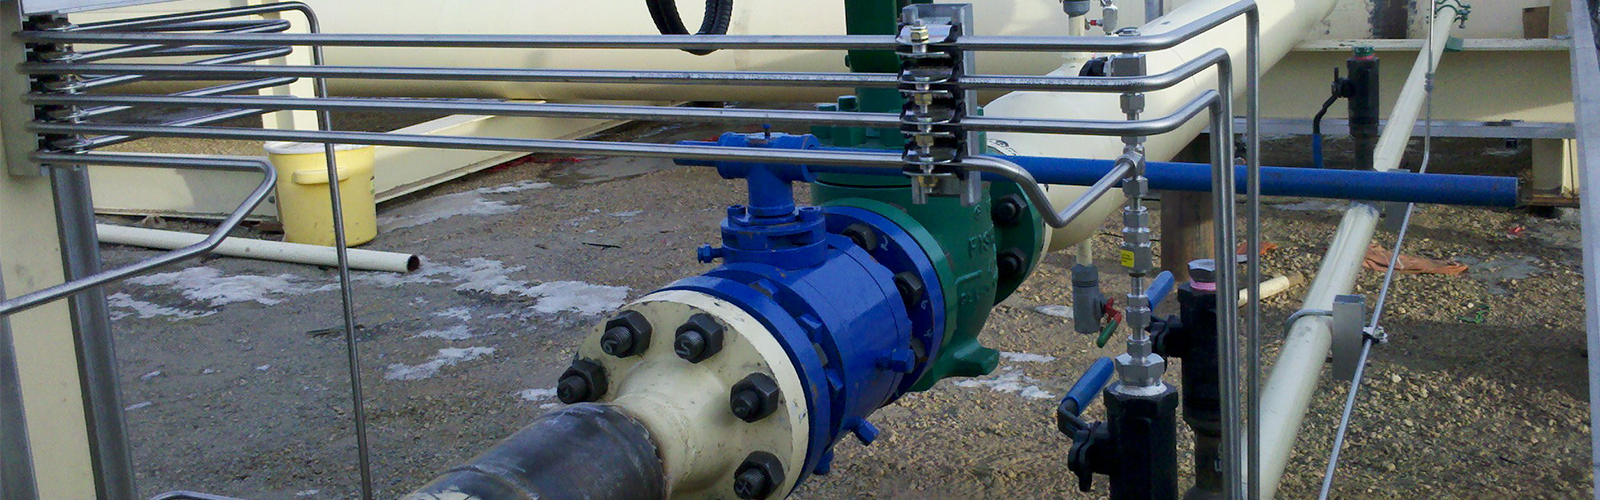 کالیبراسیون تجهیزات ابزار دقیق(شیر های صنعتی)سایت اکسیژن کارخانه ذوب خاتون آباد(پروژه مشارکت شرکت های بام راه و انرژی صنعت)